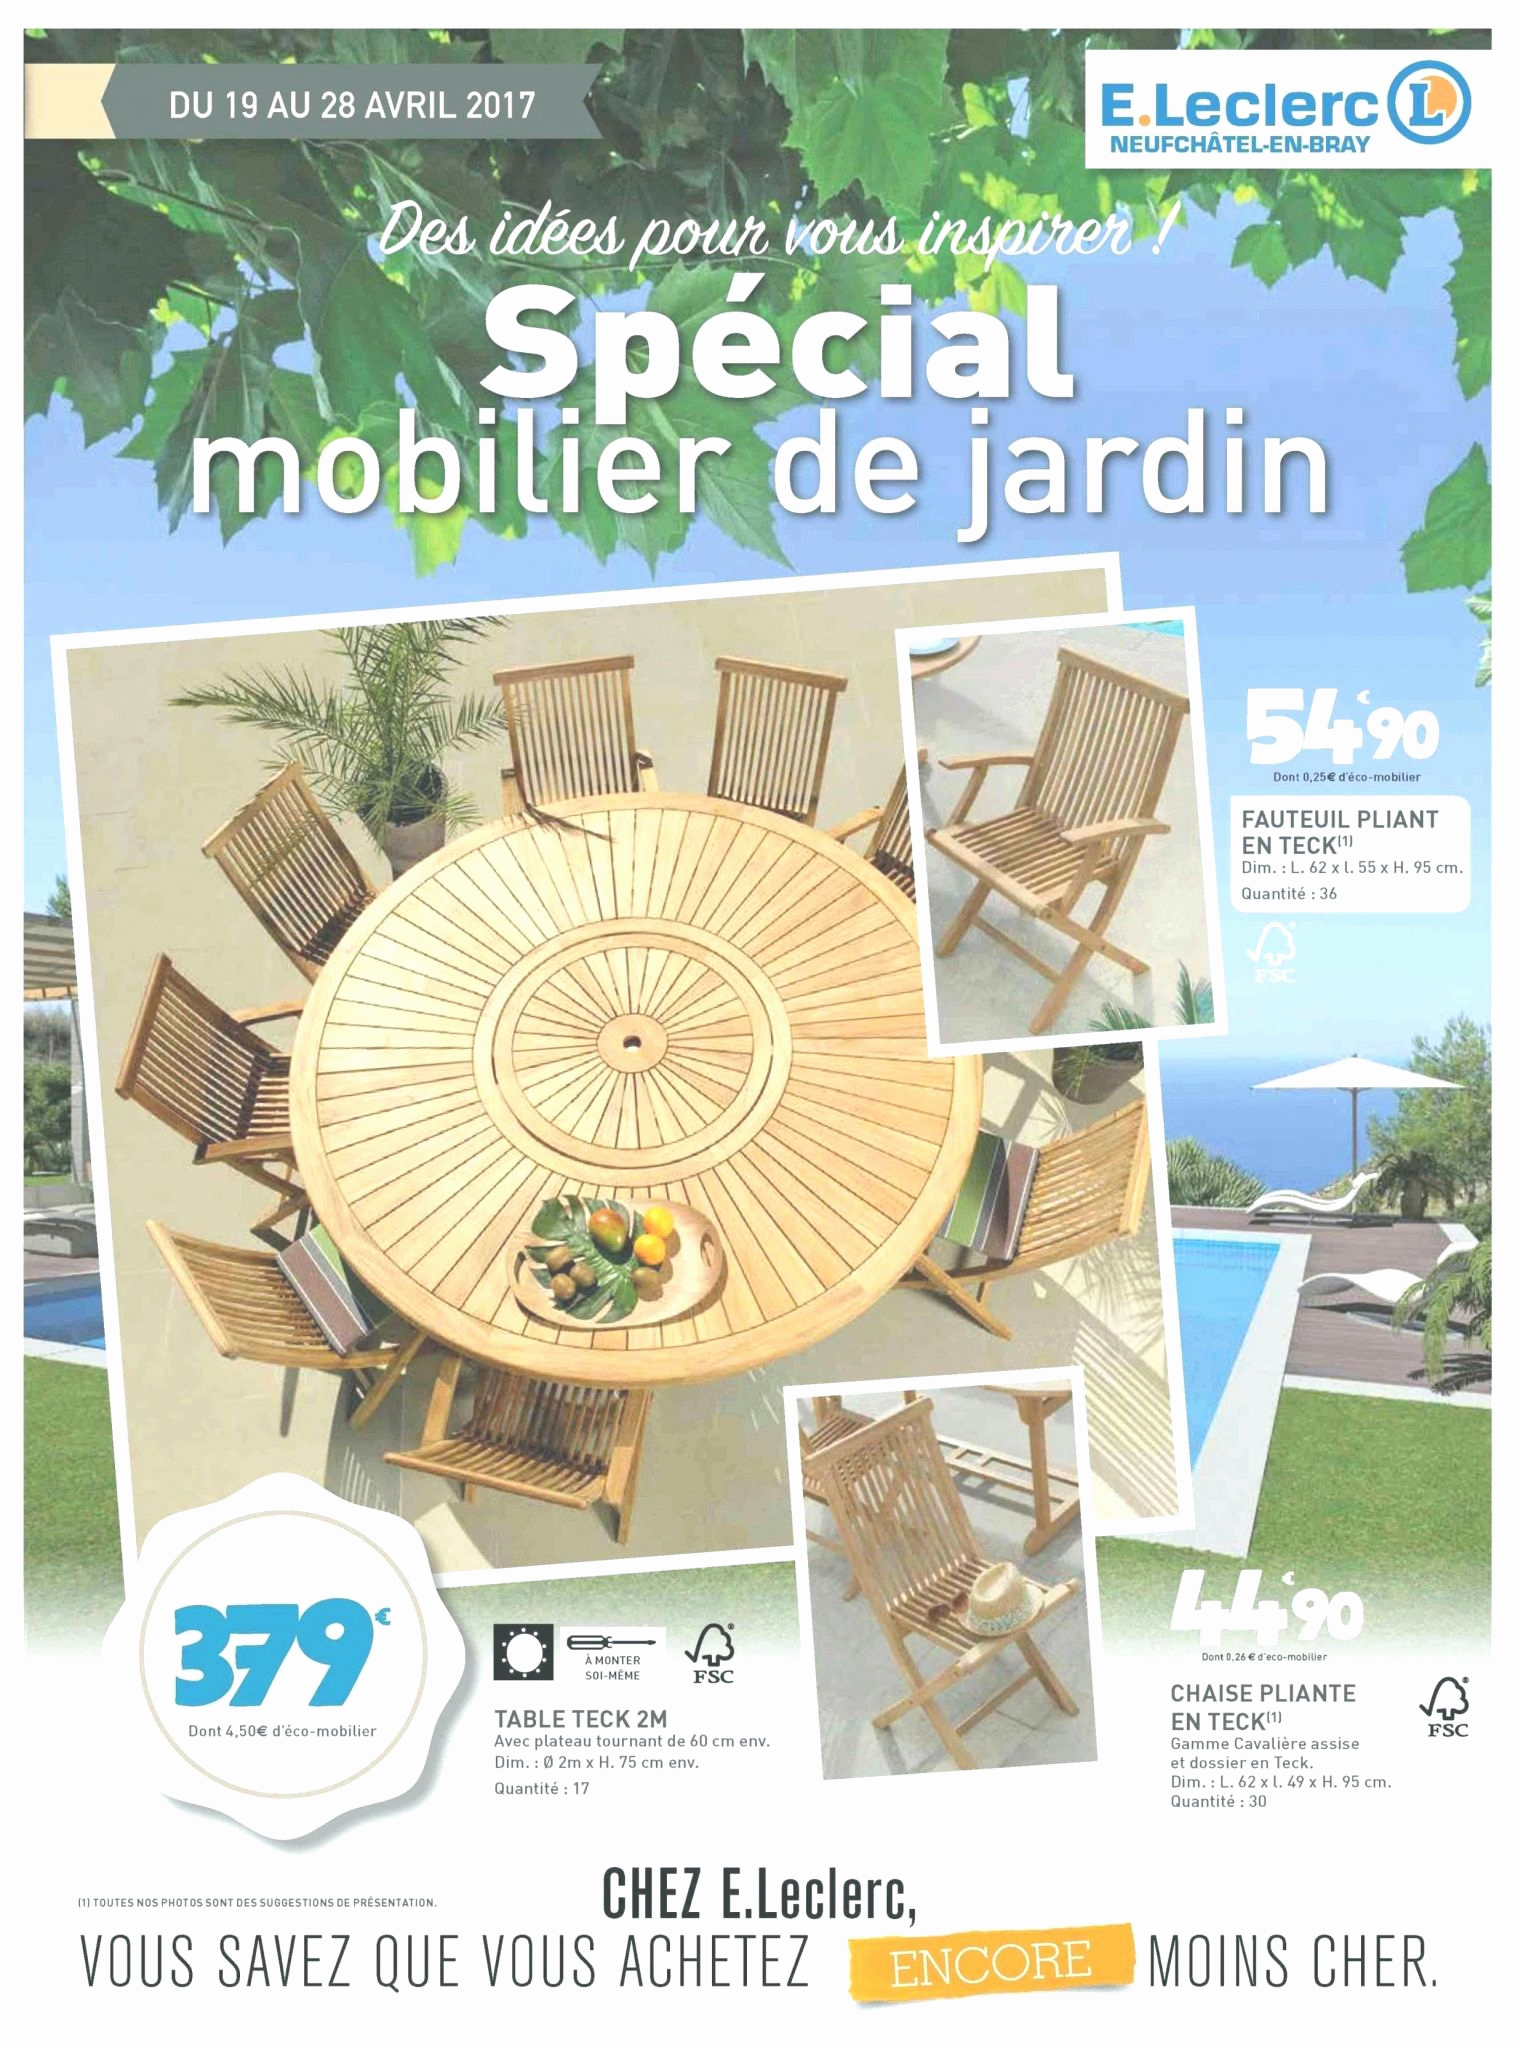 Table Teck Exterieur Best Of Salon De Jardin Leclerc Catalogue 2017 Le Meilleur De Table